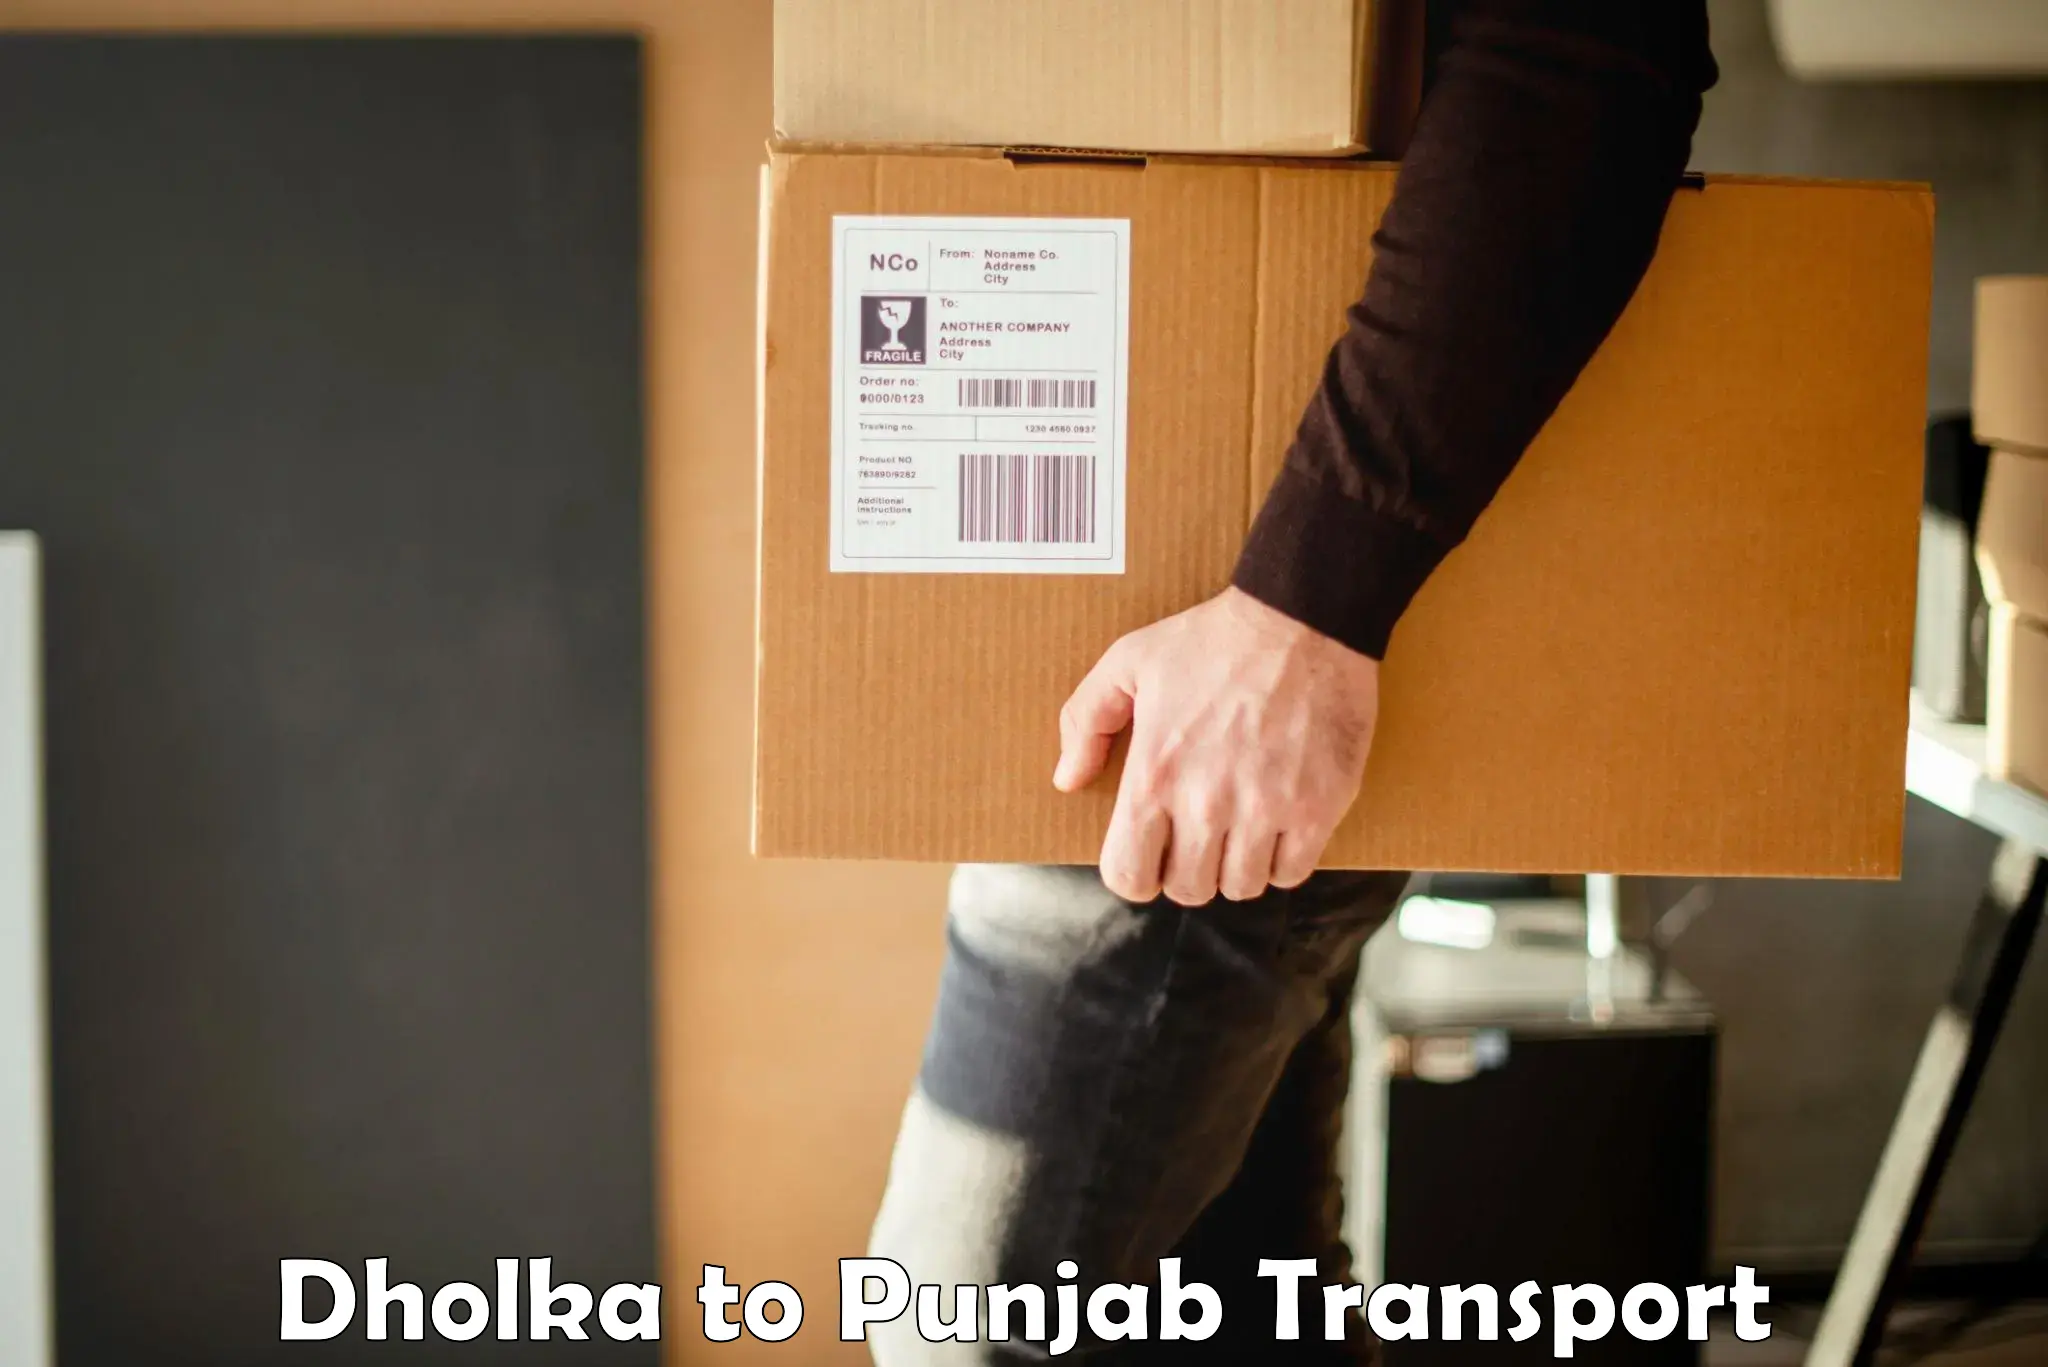 Parcel transport services Dholka to Jalandhar